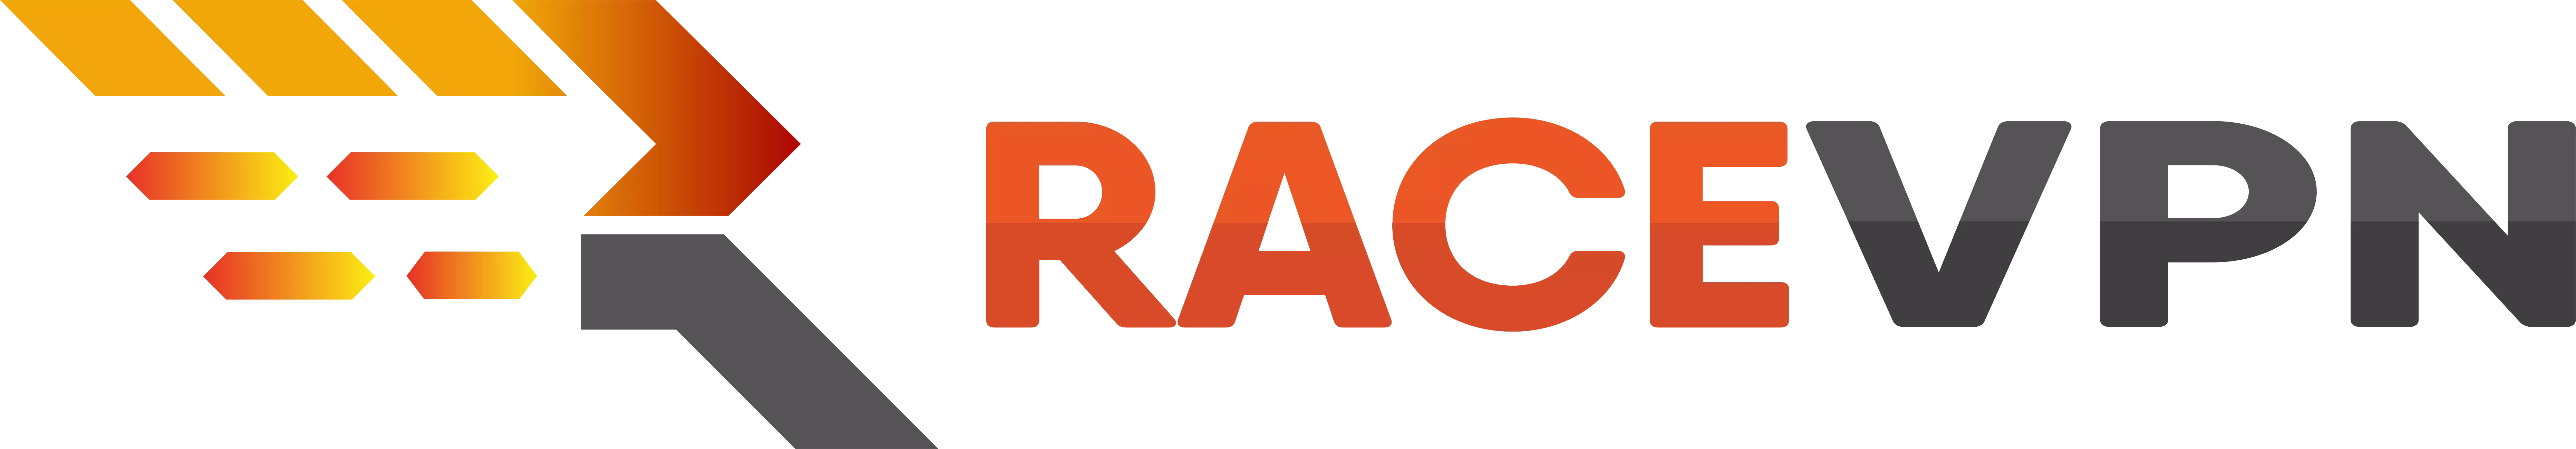 racevpn logo